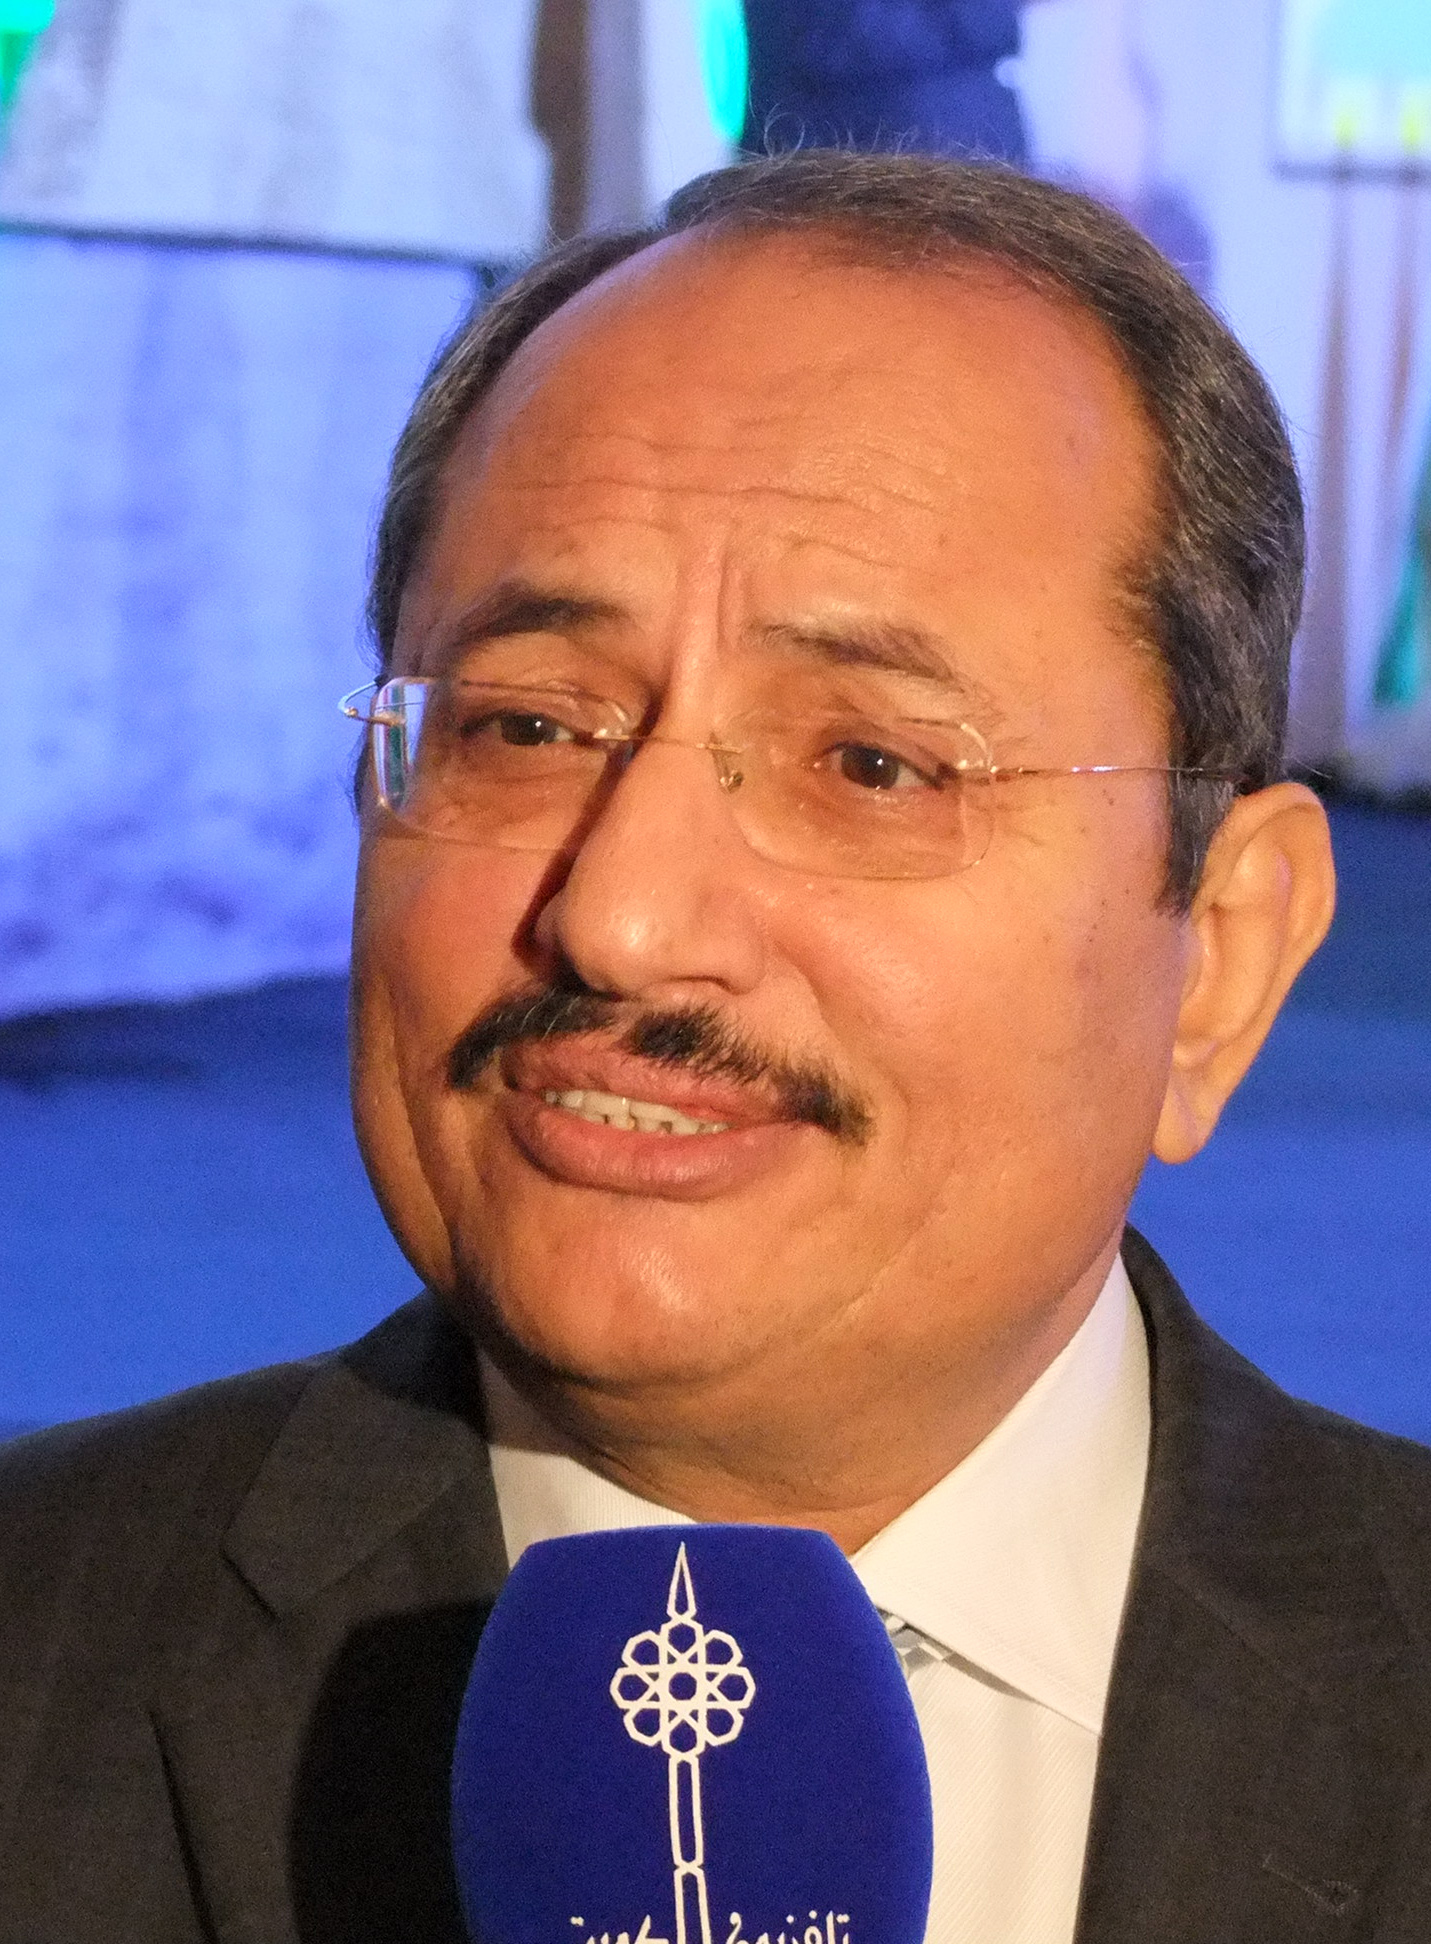 المدير العام لمنظمة العمل العربية أحمد لقمان